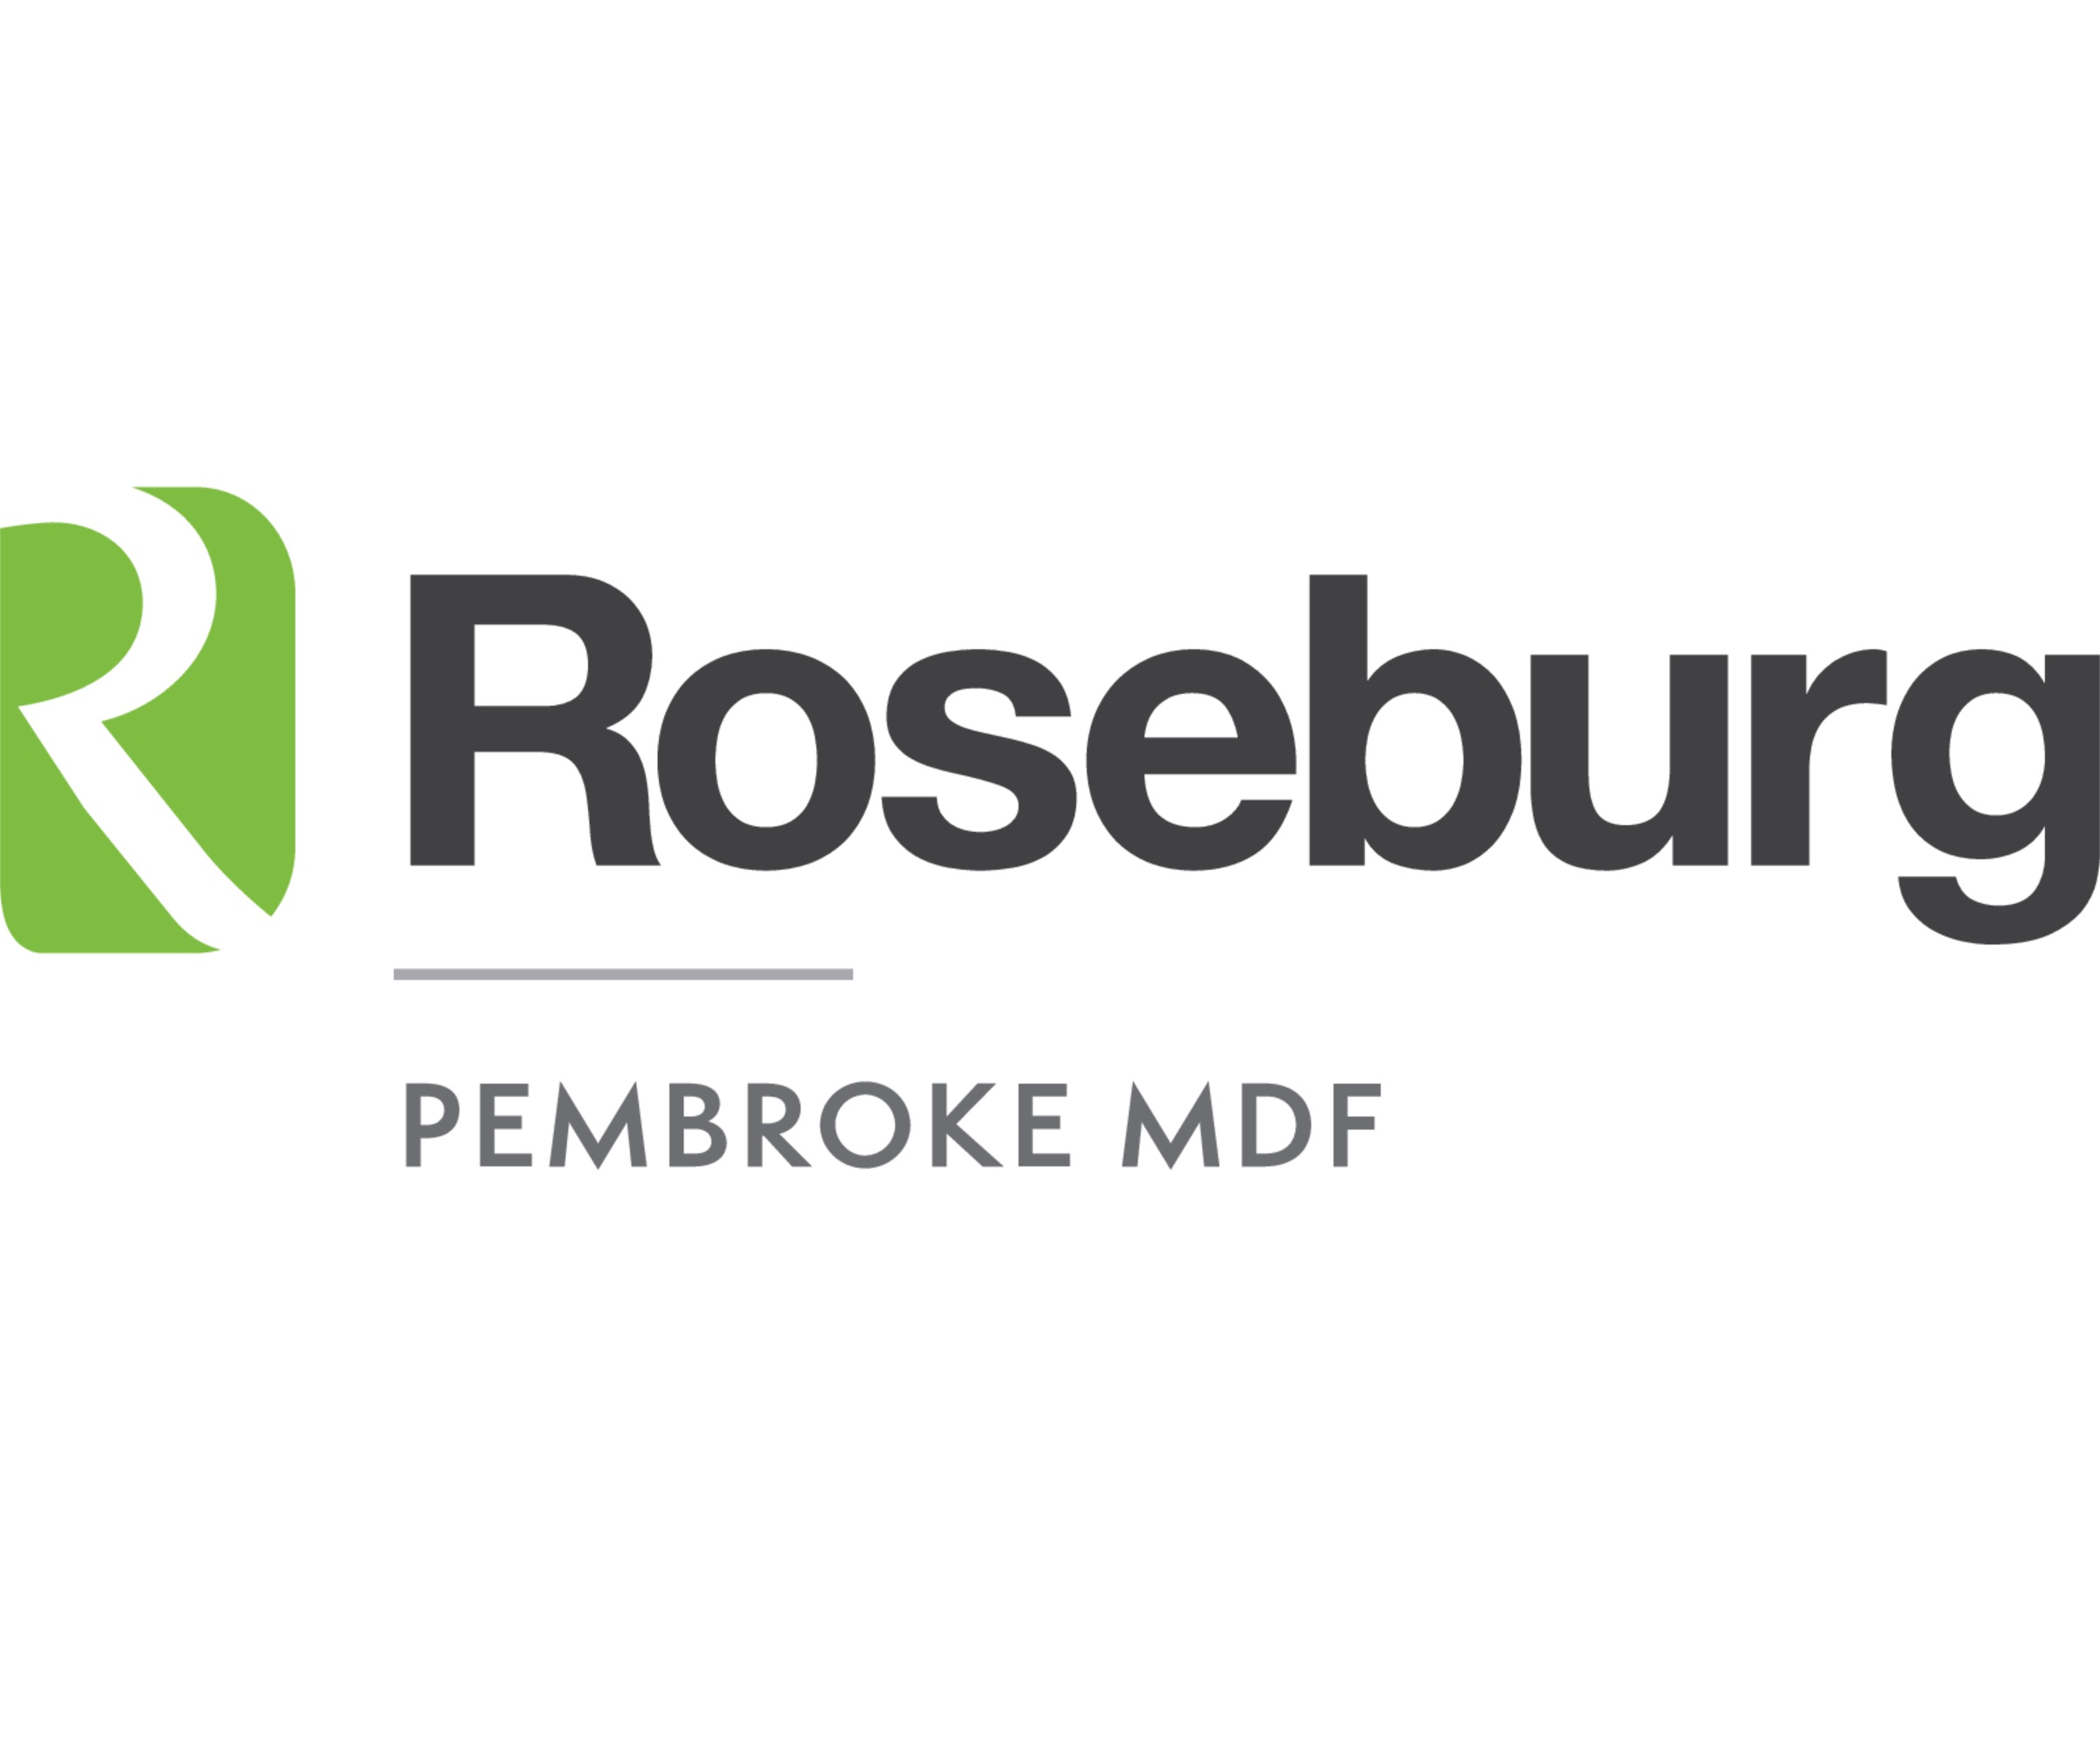 Roseburg Pembroke MDF